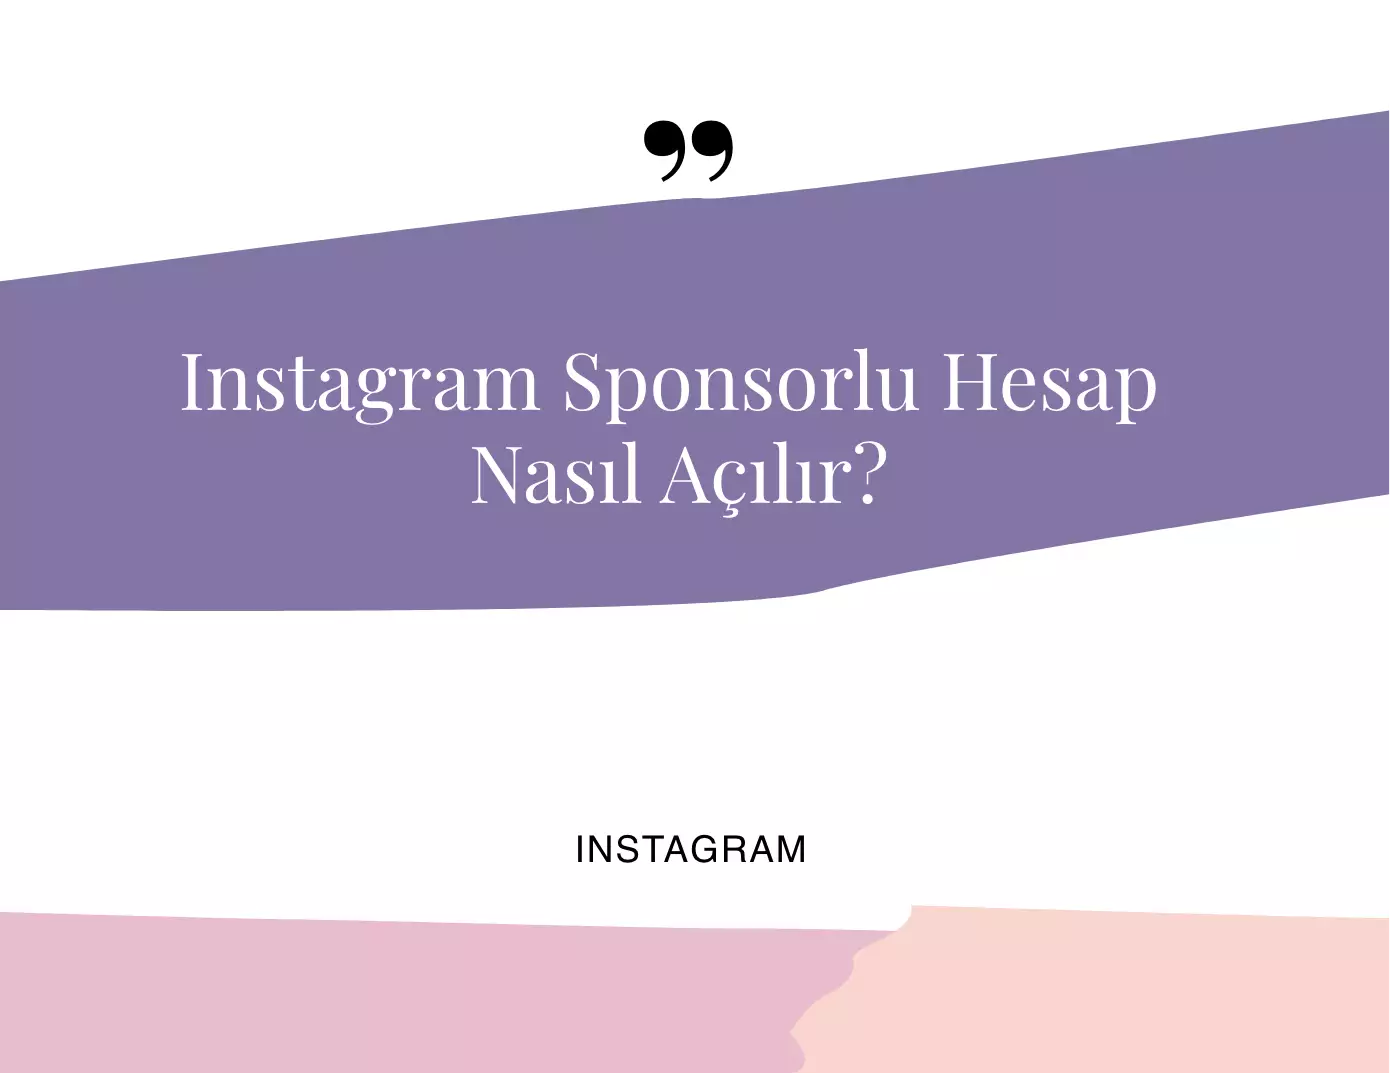 Instagram Sponsorlu Hesap Nasıl Açılır?